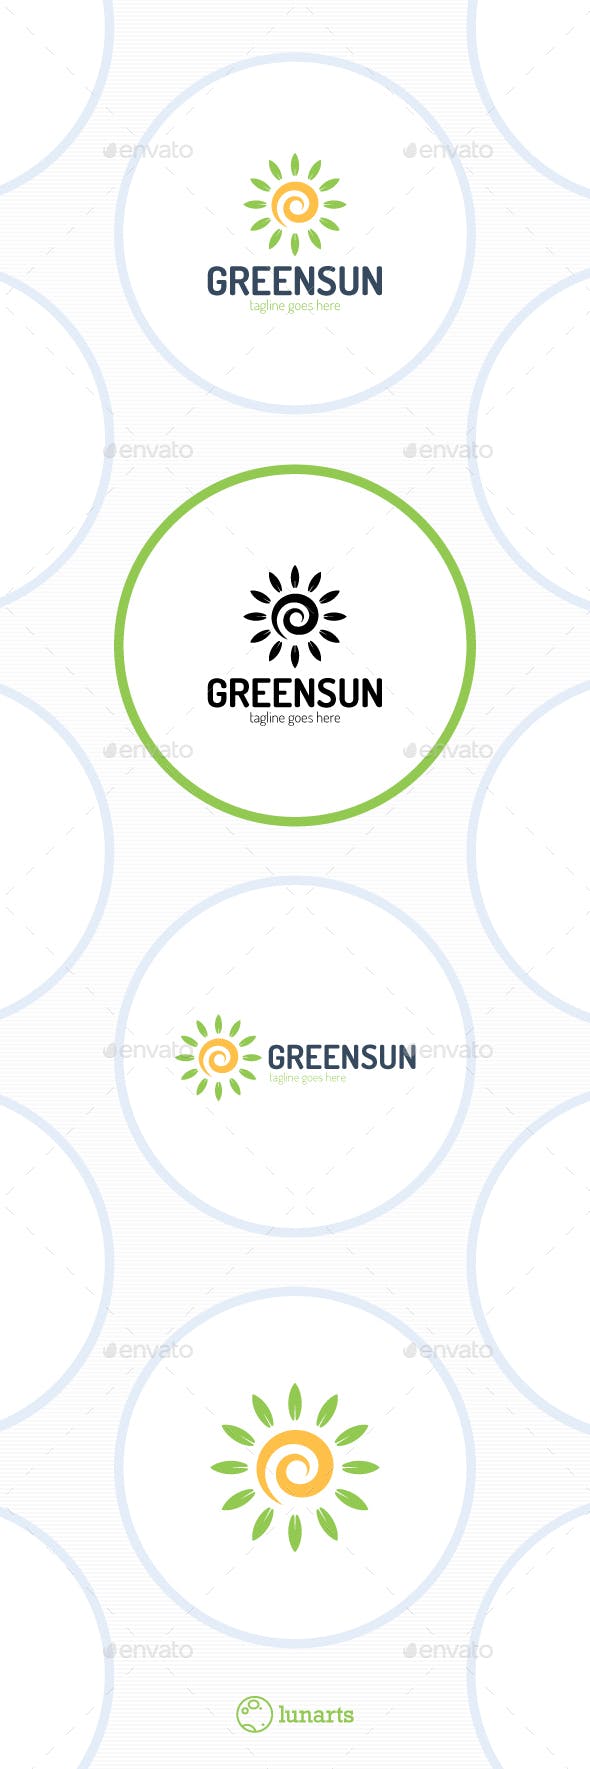 Green Spiral Logo - Green Spiral Sun Logo